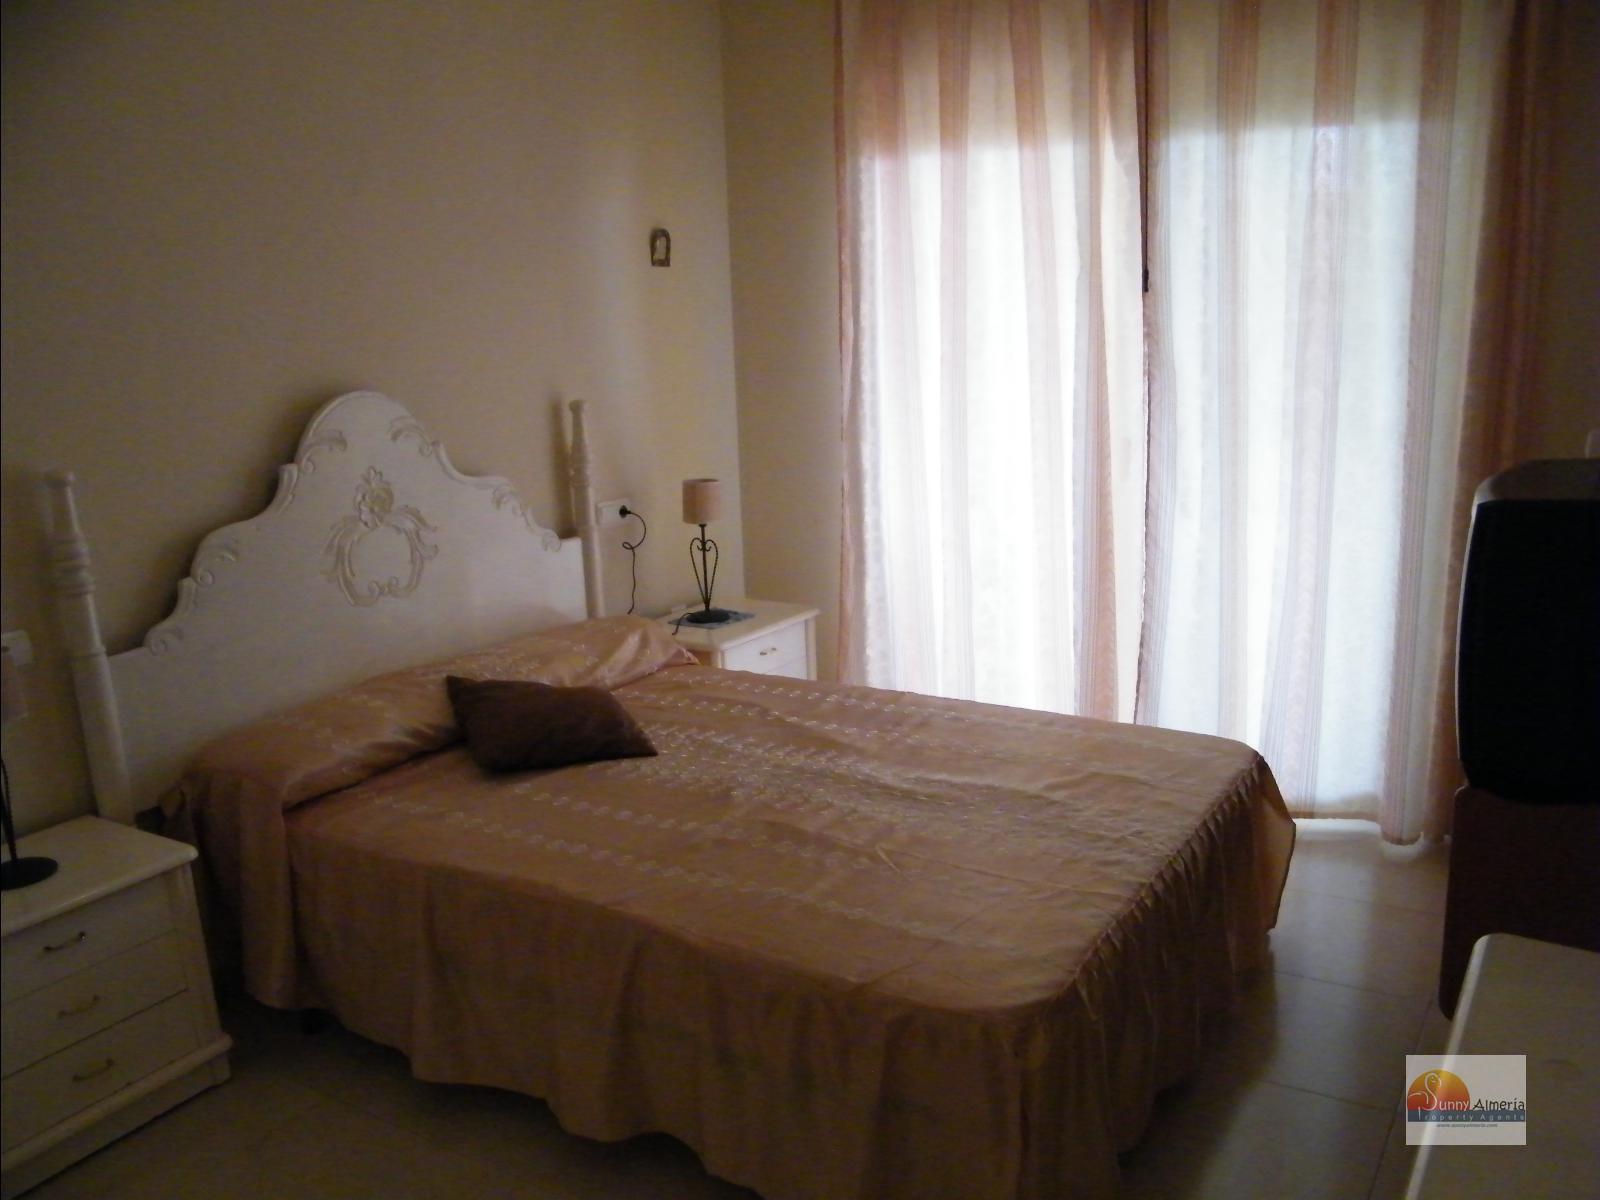 Appartamento de Lusso in affitto a Calle Fosforito 4 (Roquetas de Mar), 900 €/mese (Stagione)